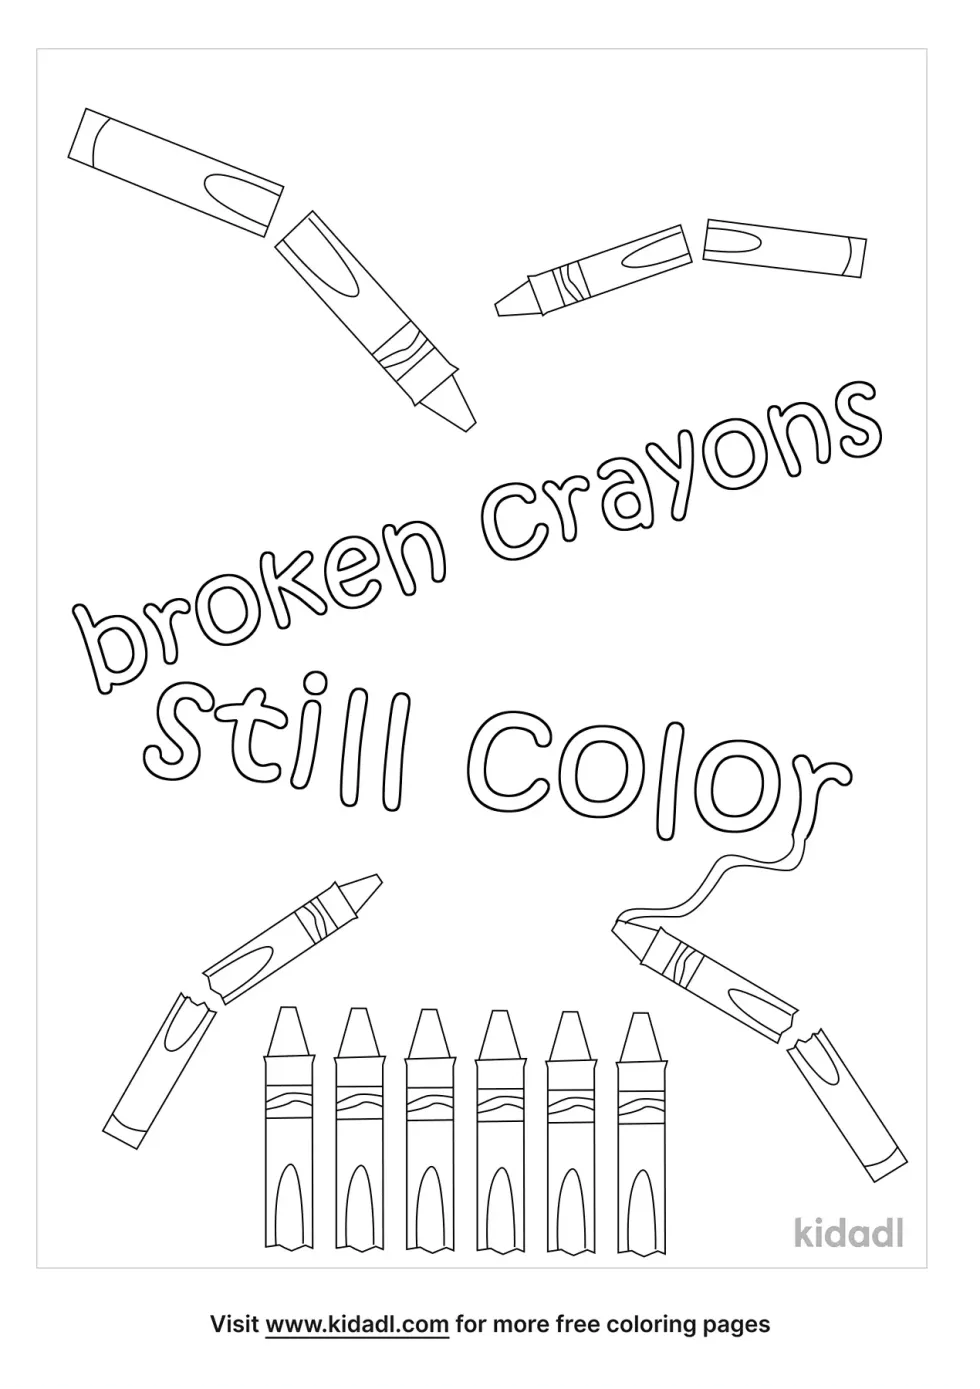 Broken Crayons Still Color Quote